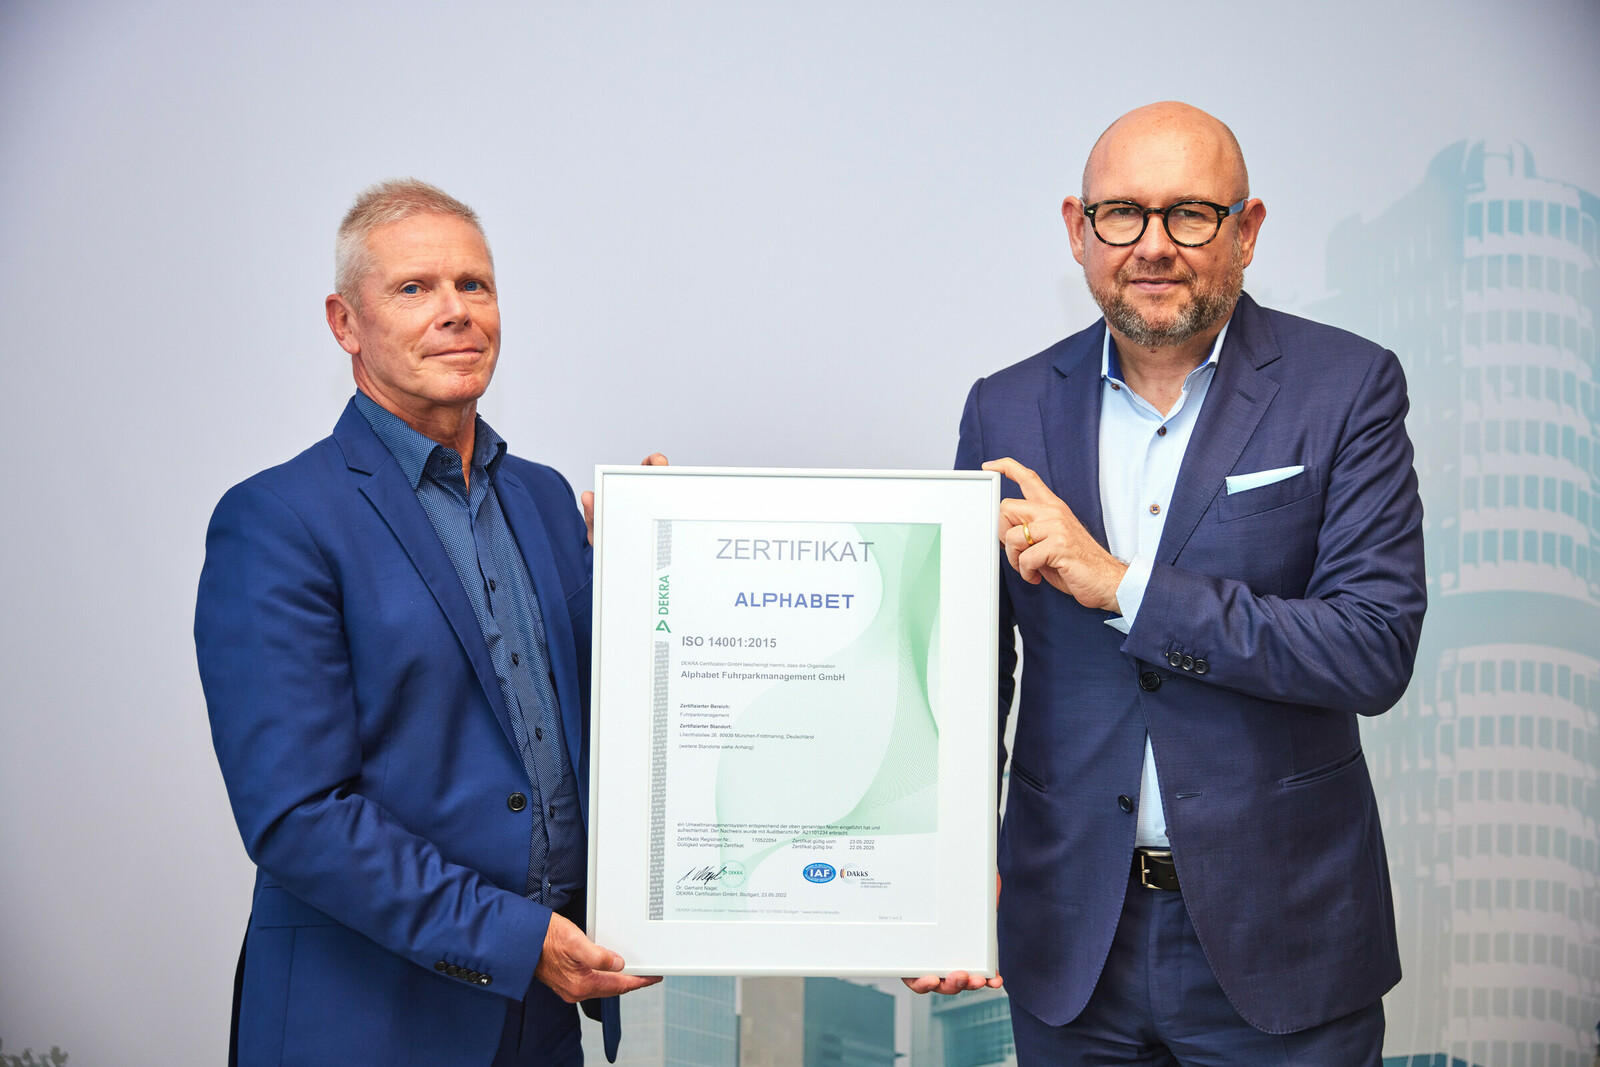 Frank Barenscheer, Head of Sales der Dekra, übergab Uwe Hildinger, Geschäftsführer von Alphabet Deutschland, die ISO-14001-Zertifizierung.